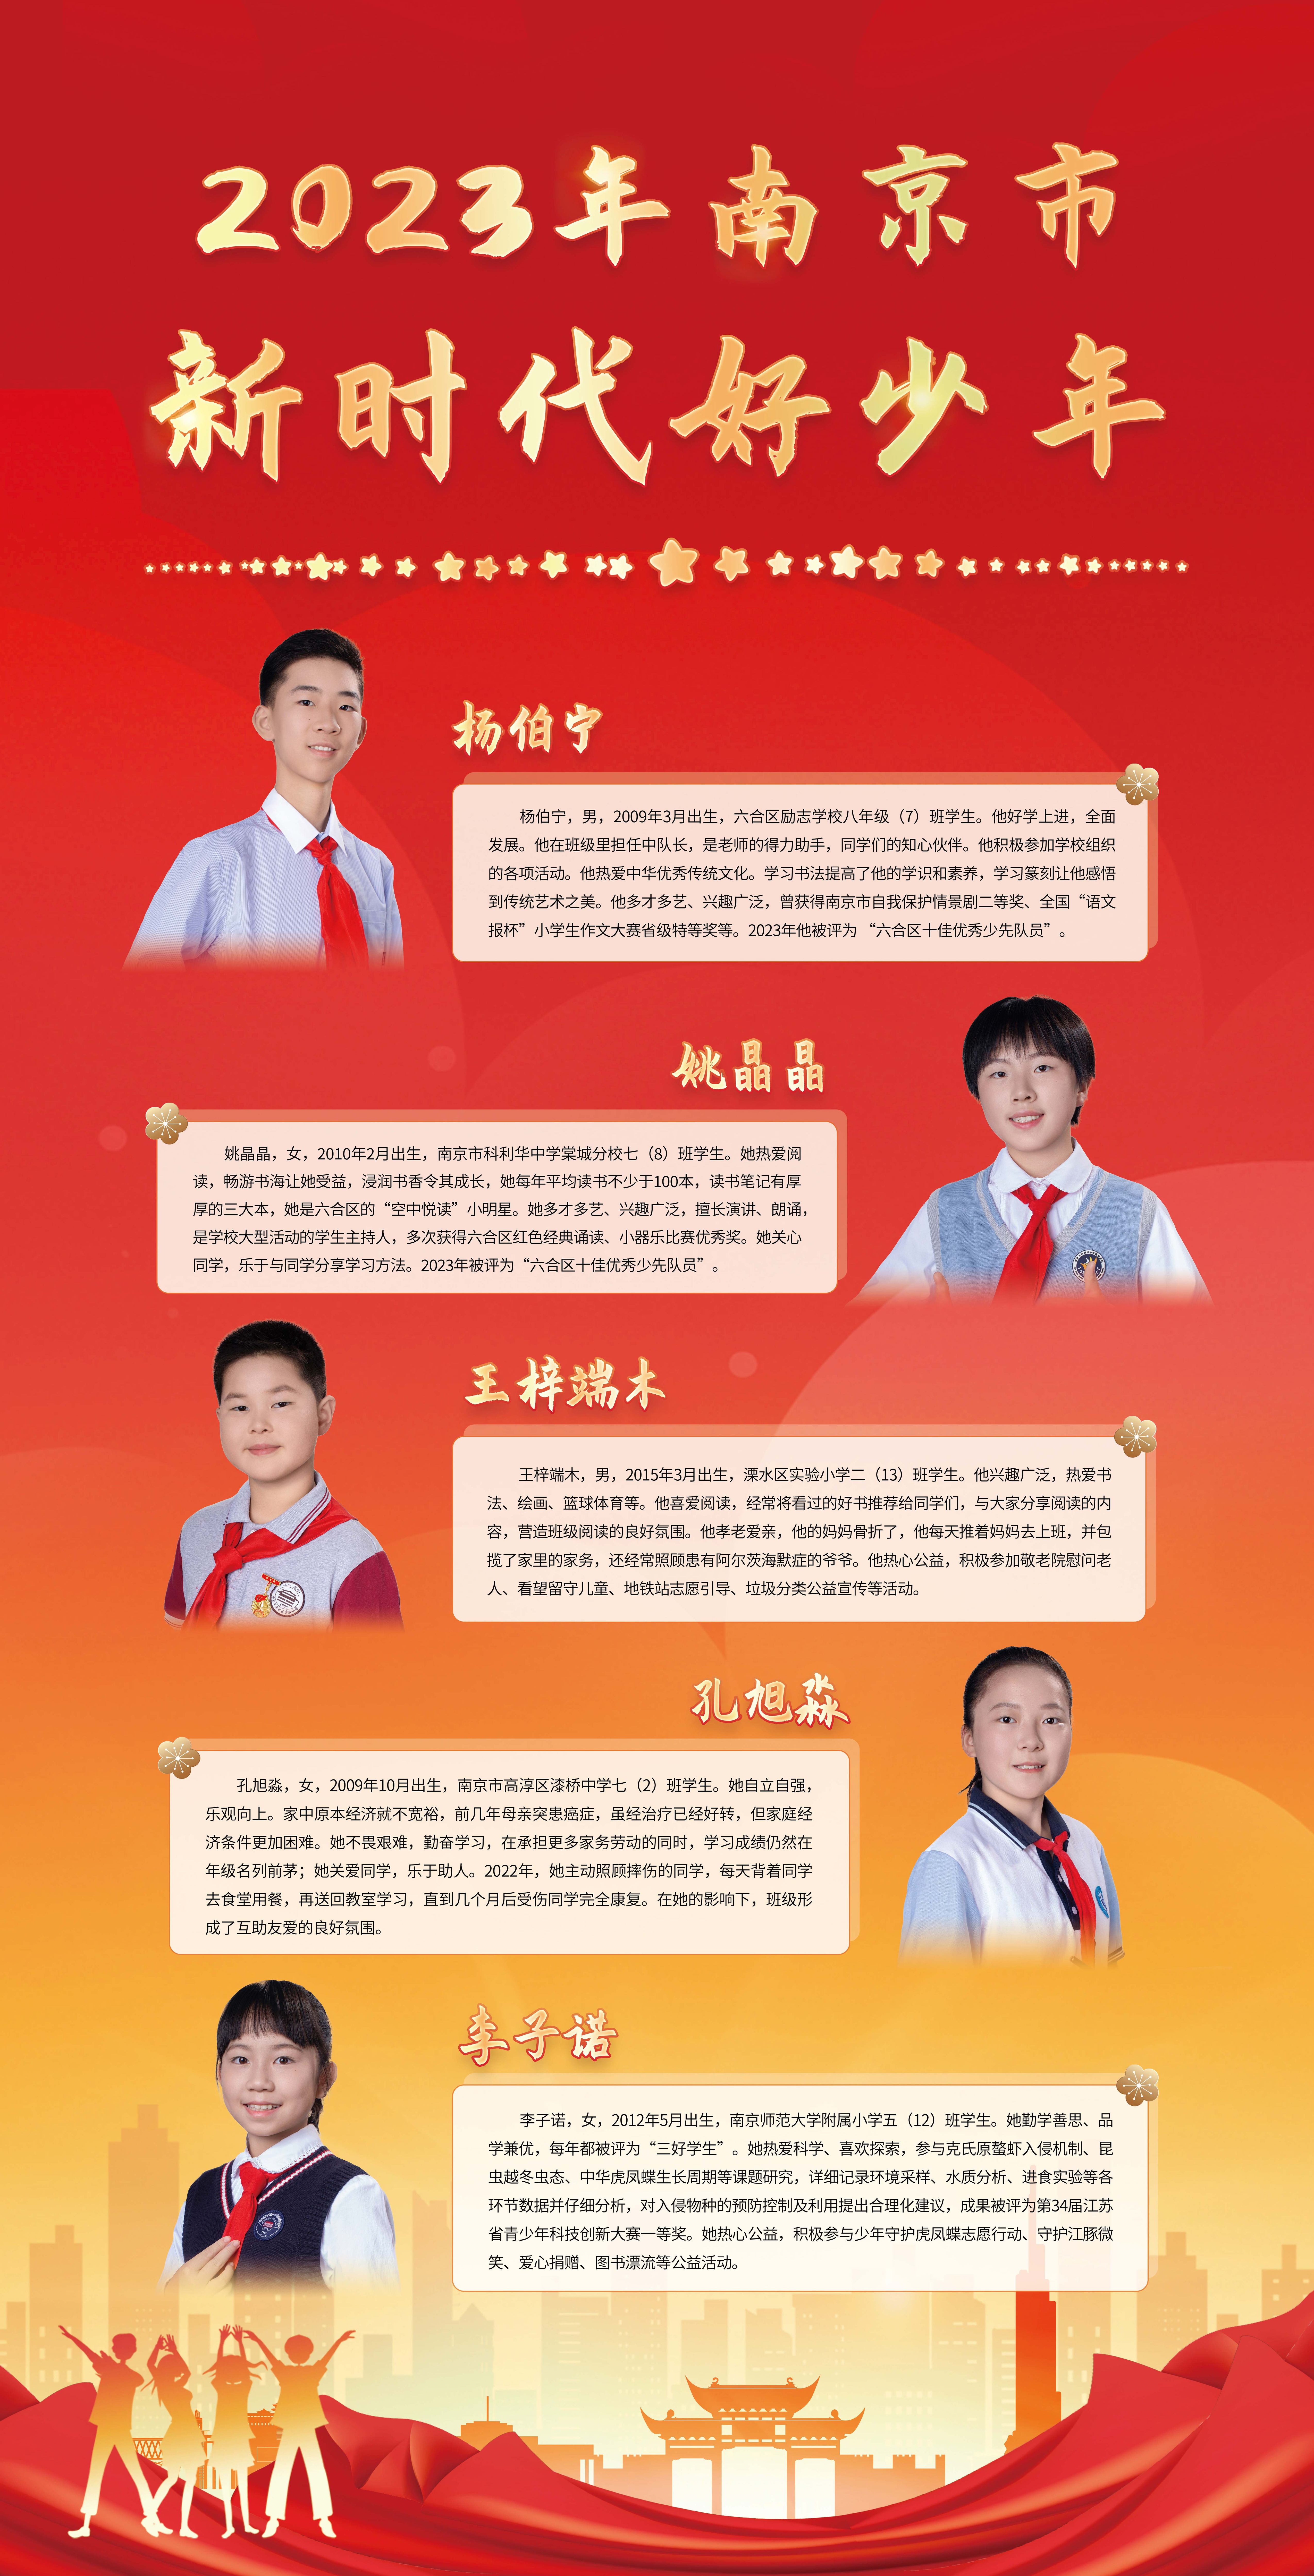 2023-年南京市第一批“新时代好少年”宣传展示图6.jpg